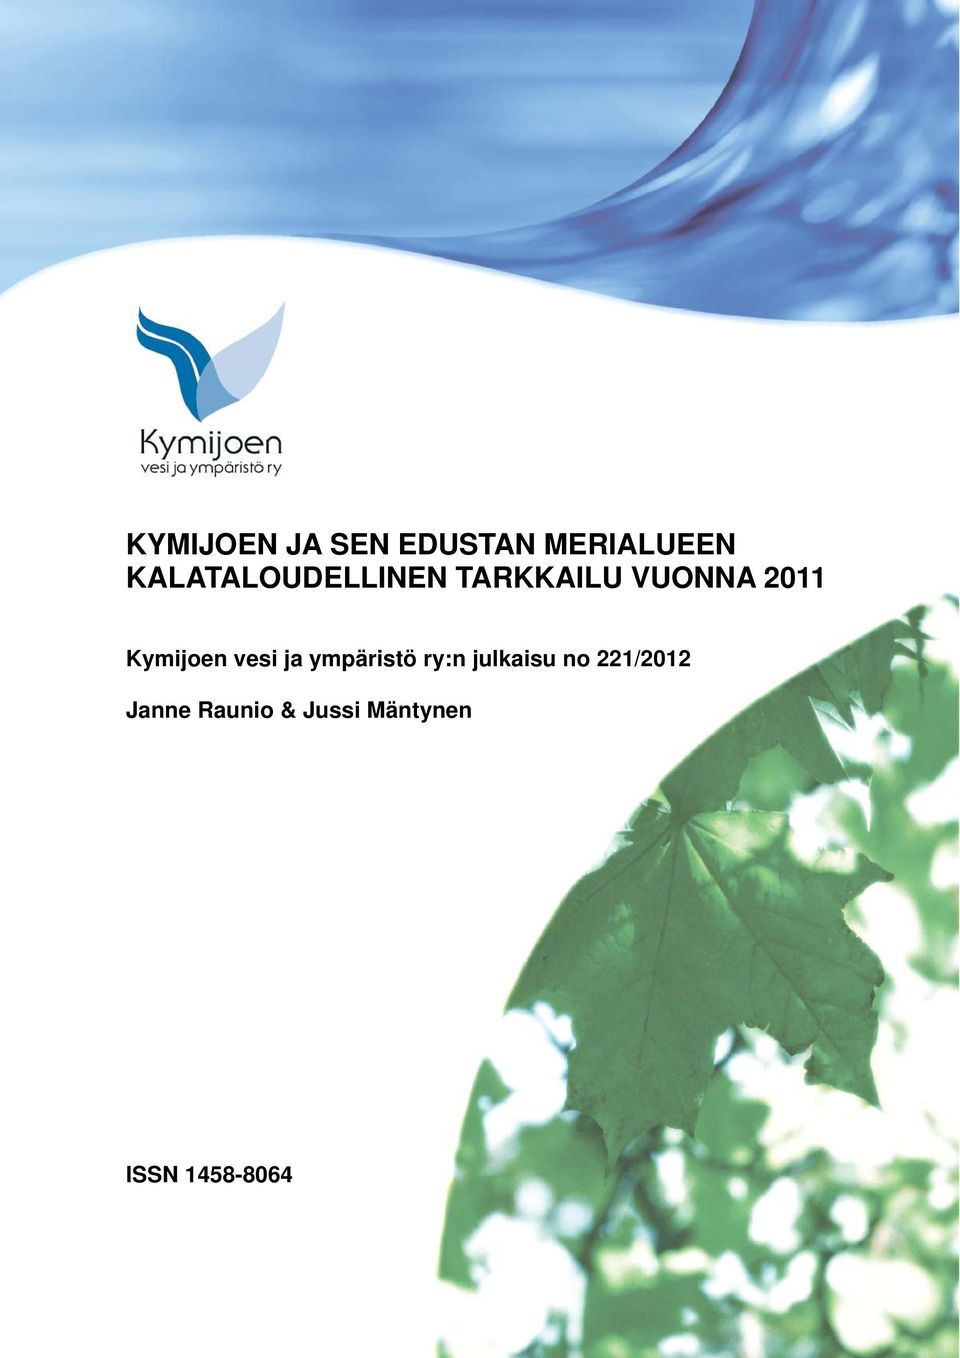 Kymijoen vesi ja ympäristö ry:n julkaisu